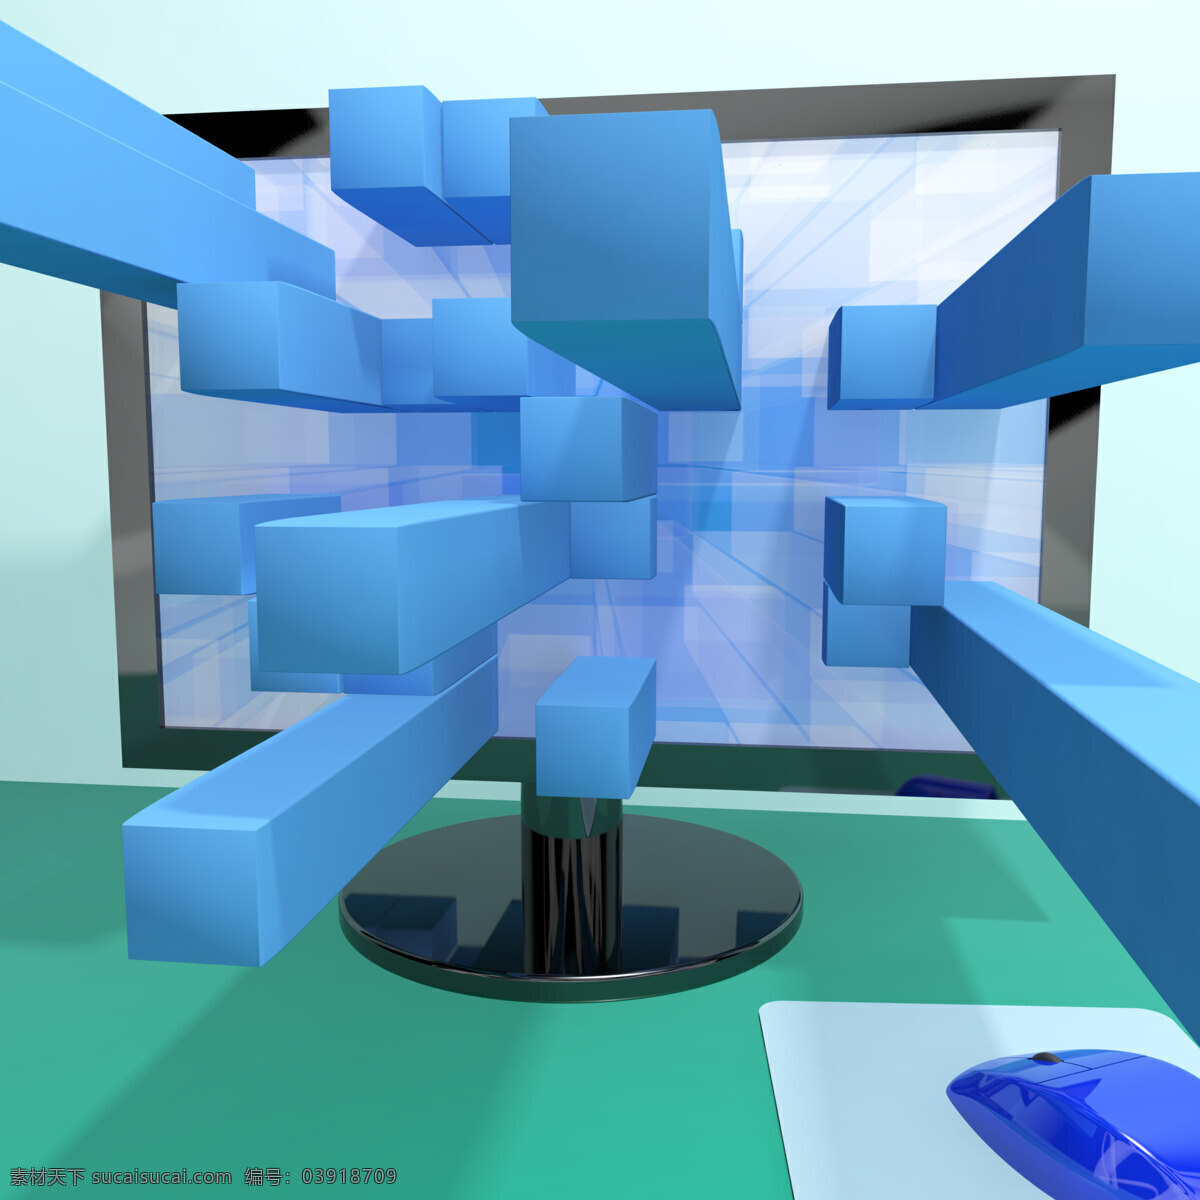 三维 方 计算机 监视器 显示 图形 软件 插图 青色 天蓝色